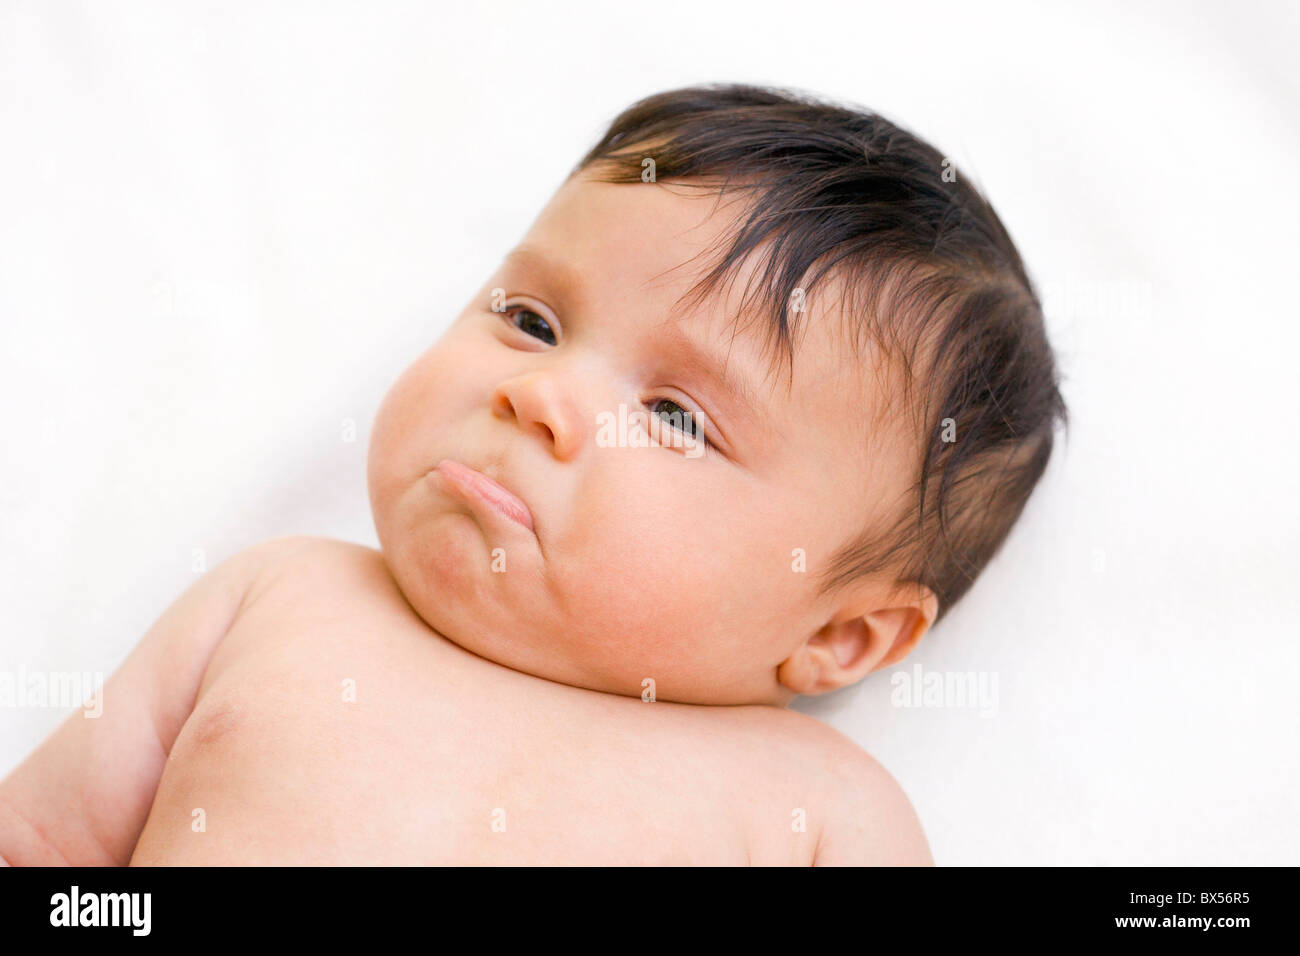 Bebes Tristes Fotos E Imagenes De Stock Alamy